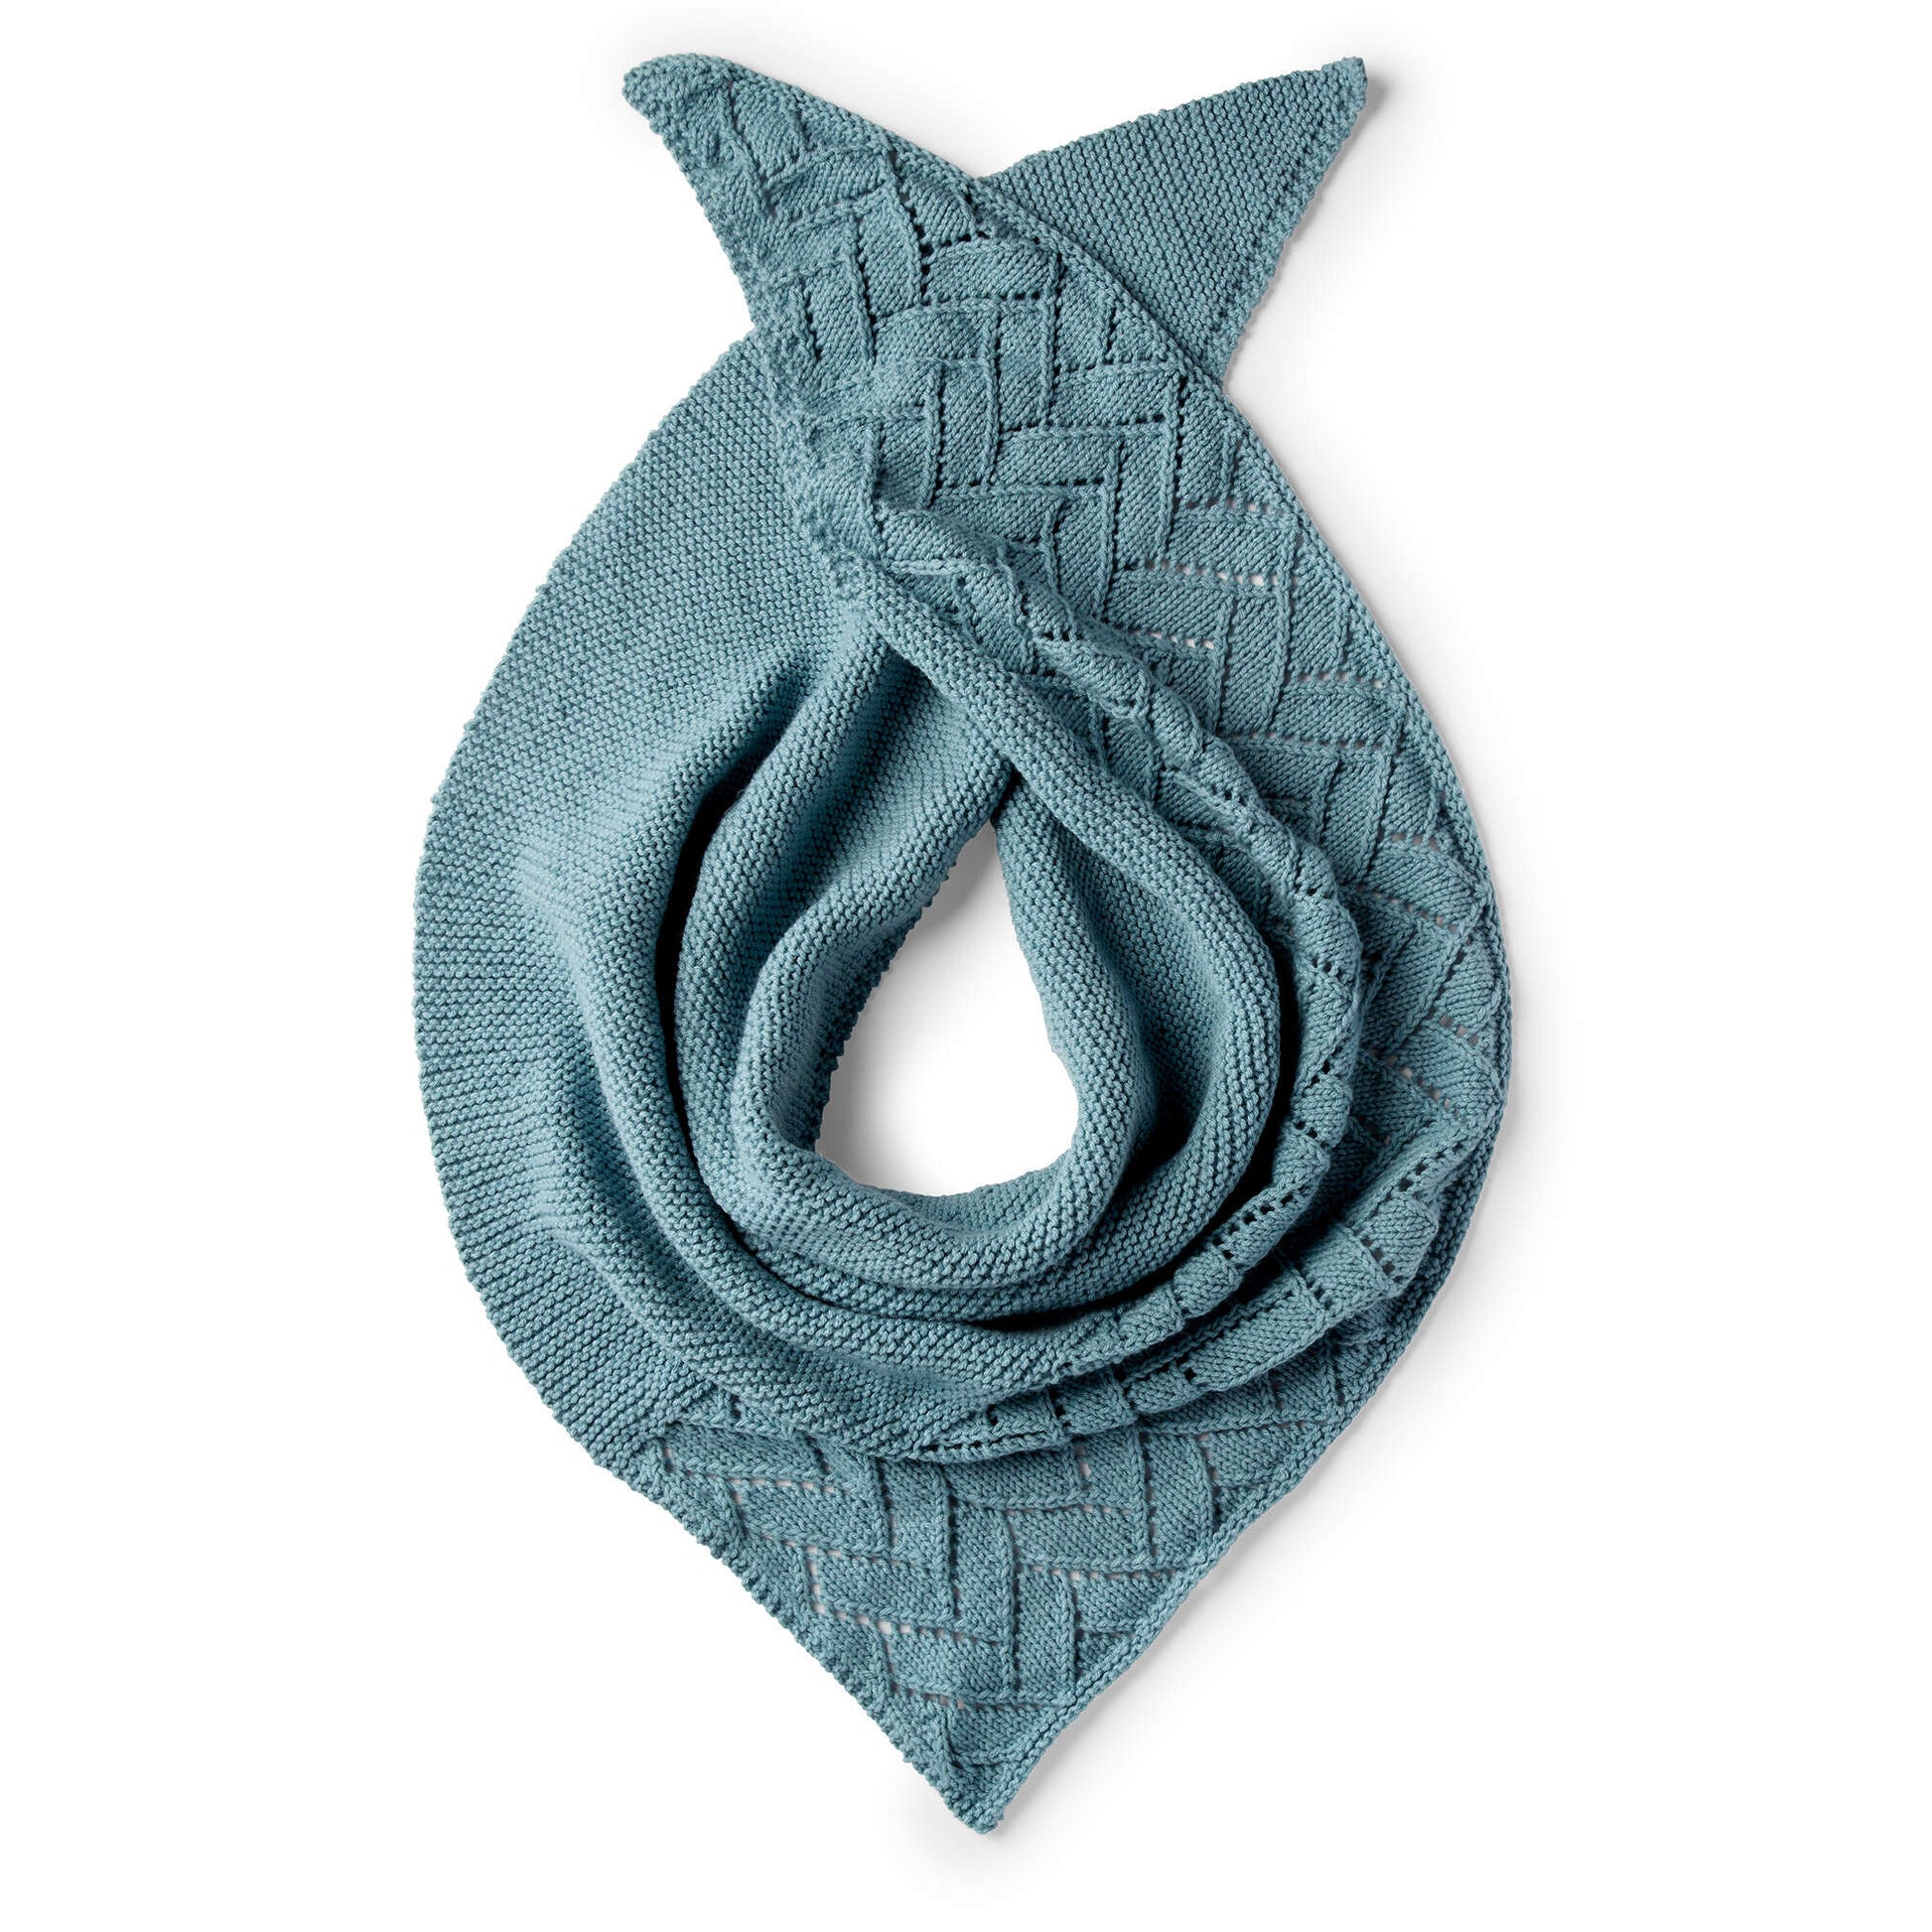 Free Caron Asymmetrical Lace Knit Shawl Pattern